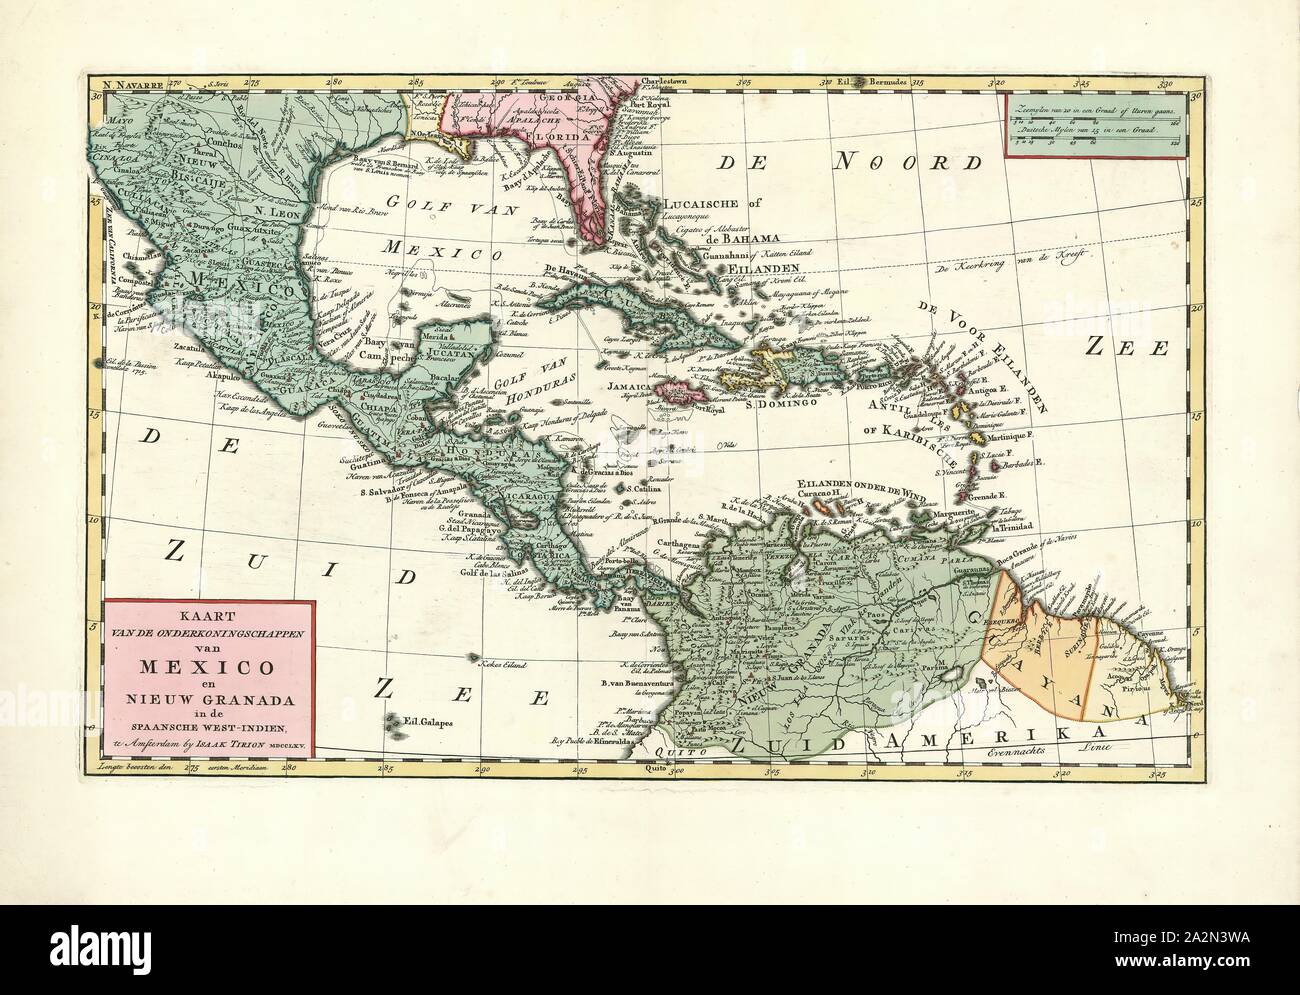 Map, Kaart van de onderkoningschappen van Mexico en Nieuw Granada in de Spaansche West-Indien, Copperplate print Stock Photo